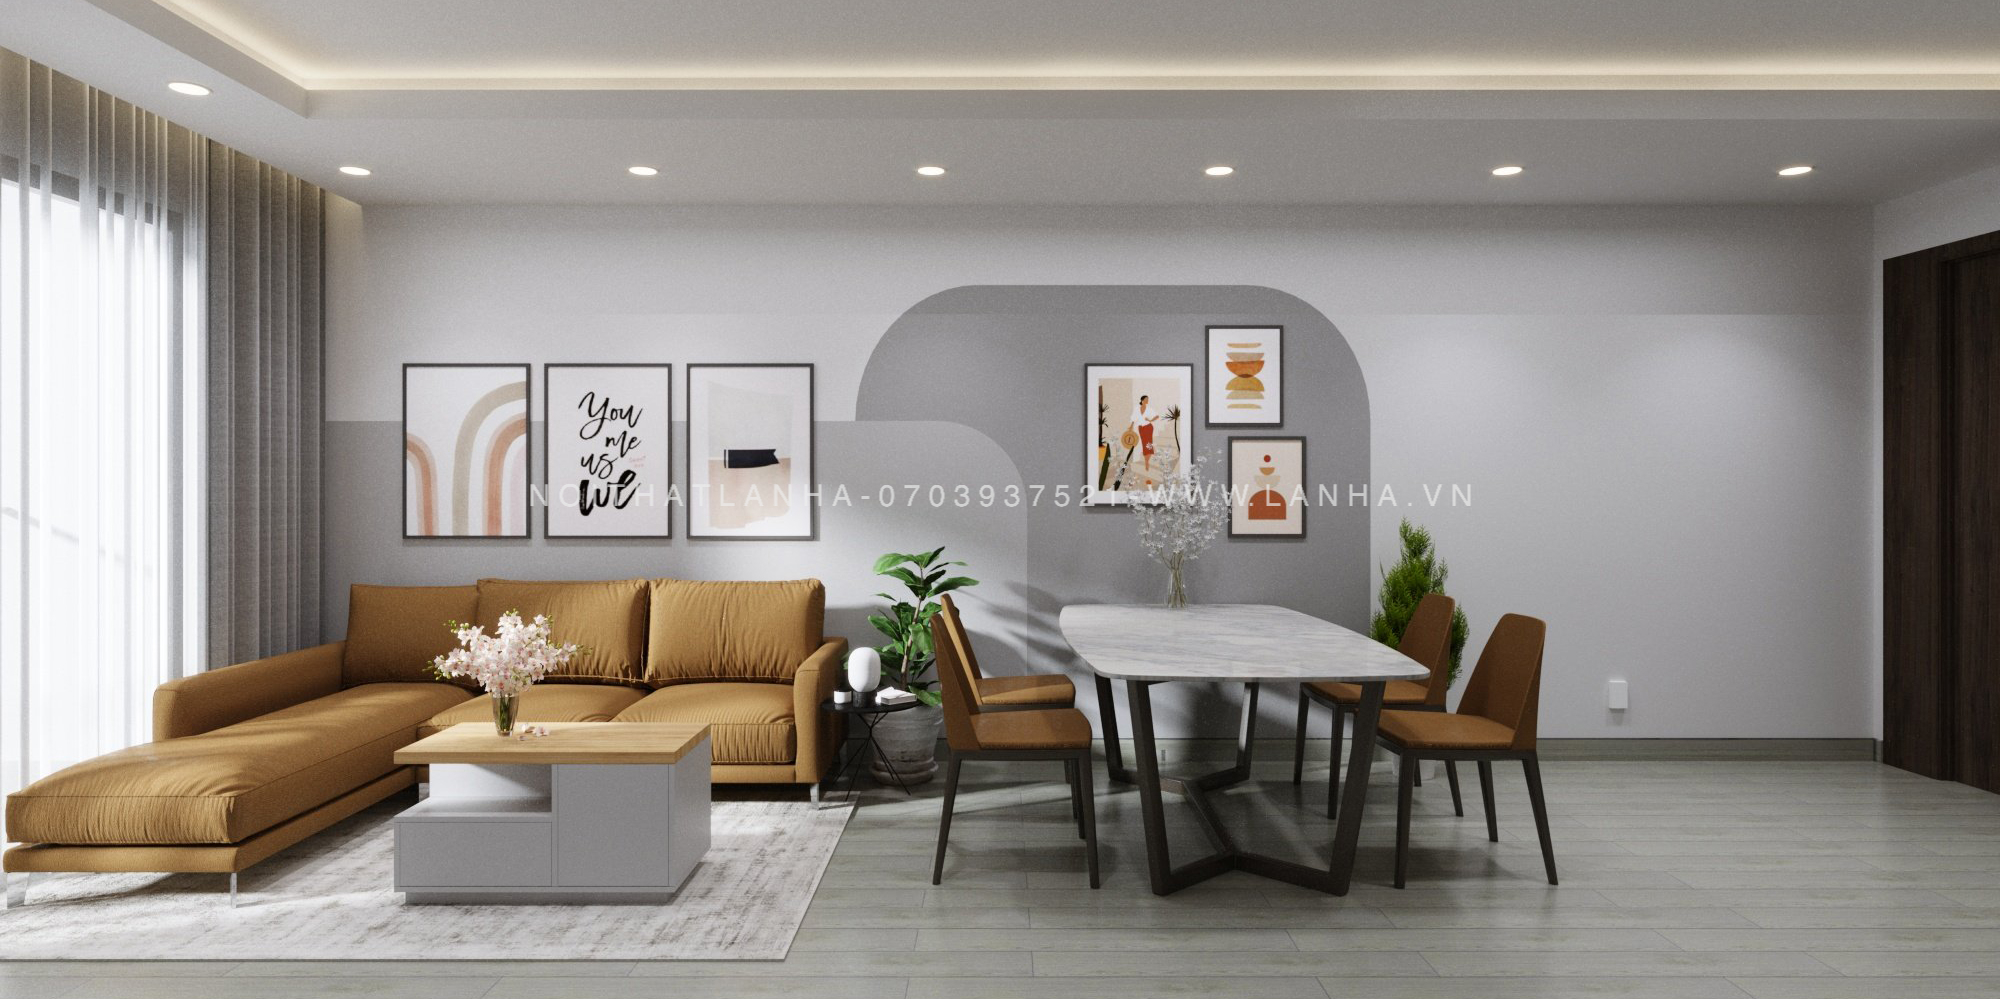 Mẫu thiết kế phòng khách hiện đại cho chung cư với tông trắng xám